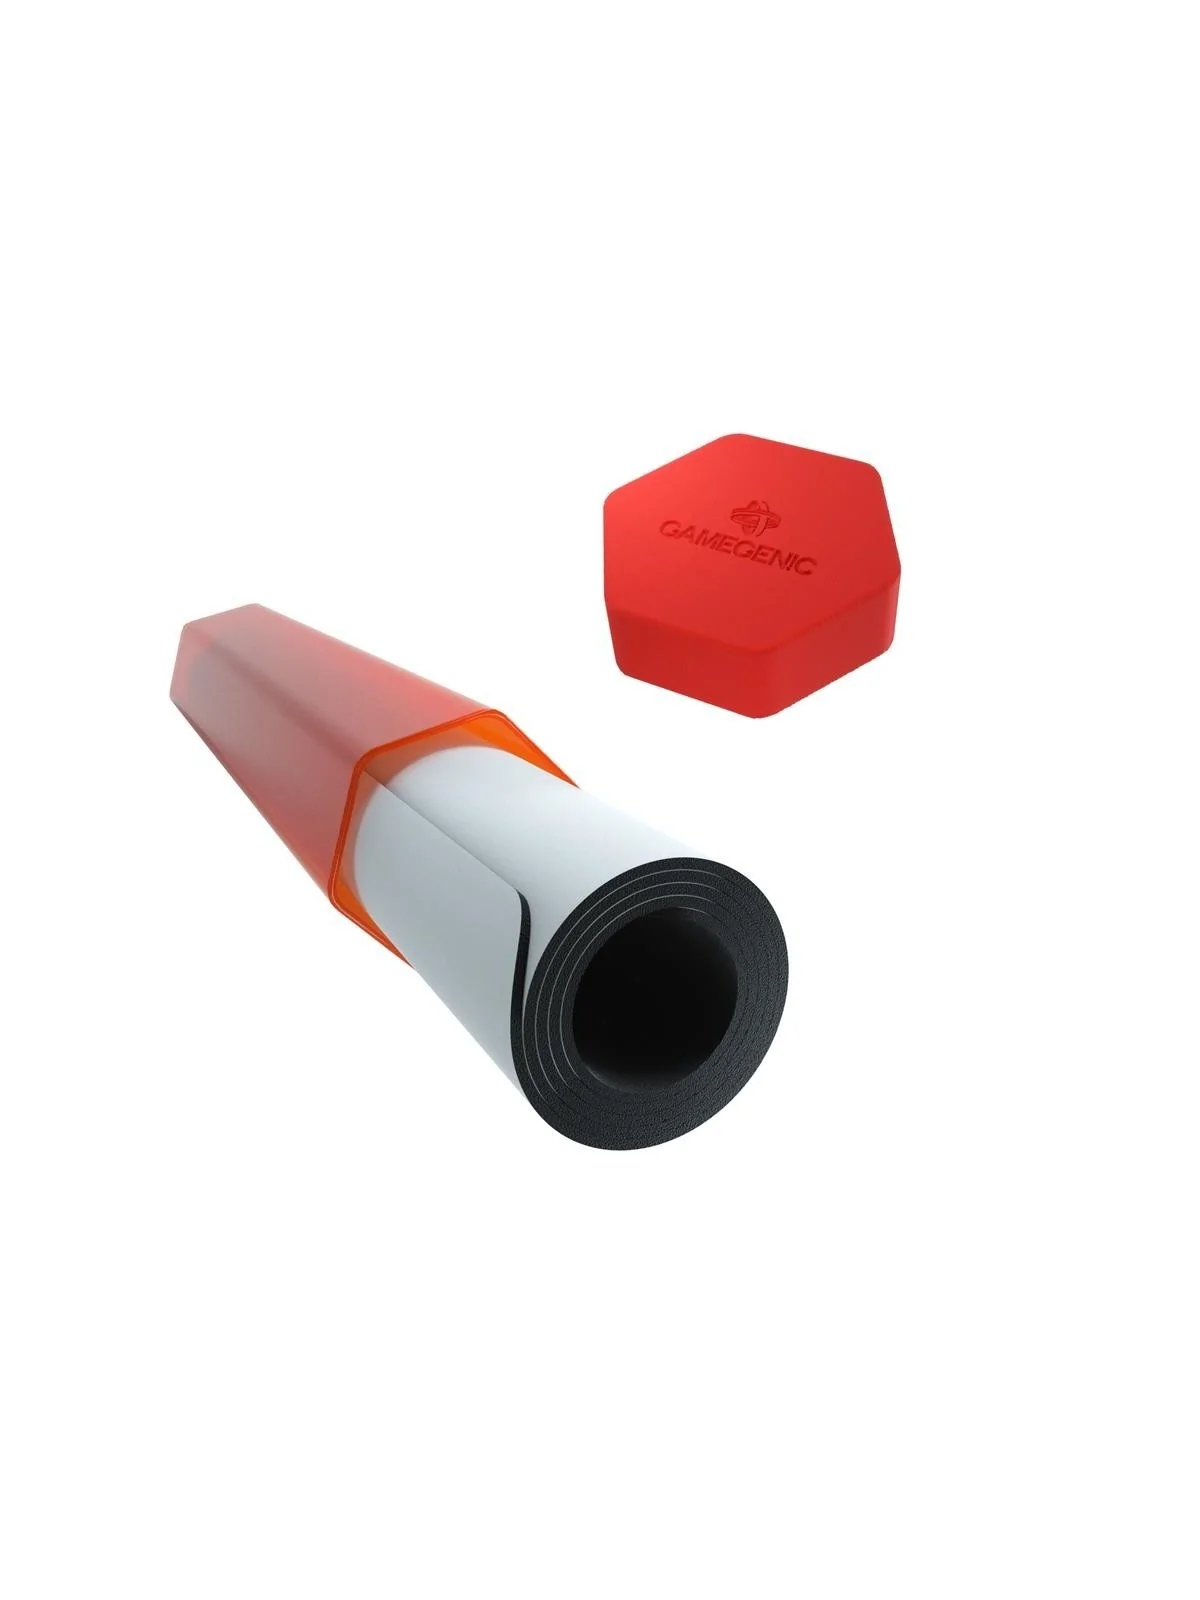 Comprar Playmat Tube Red barato al mejor precio 8,54 € de Gamegenic